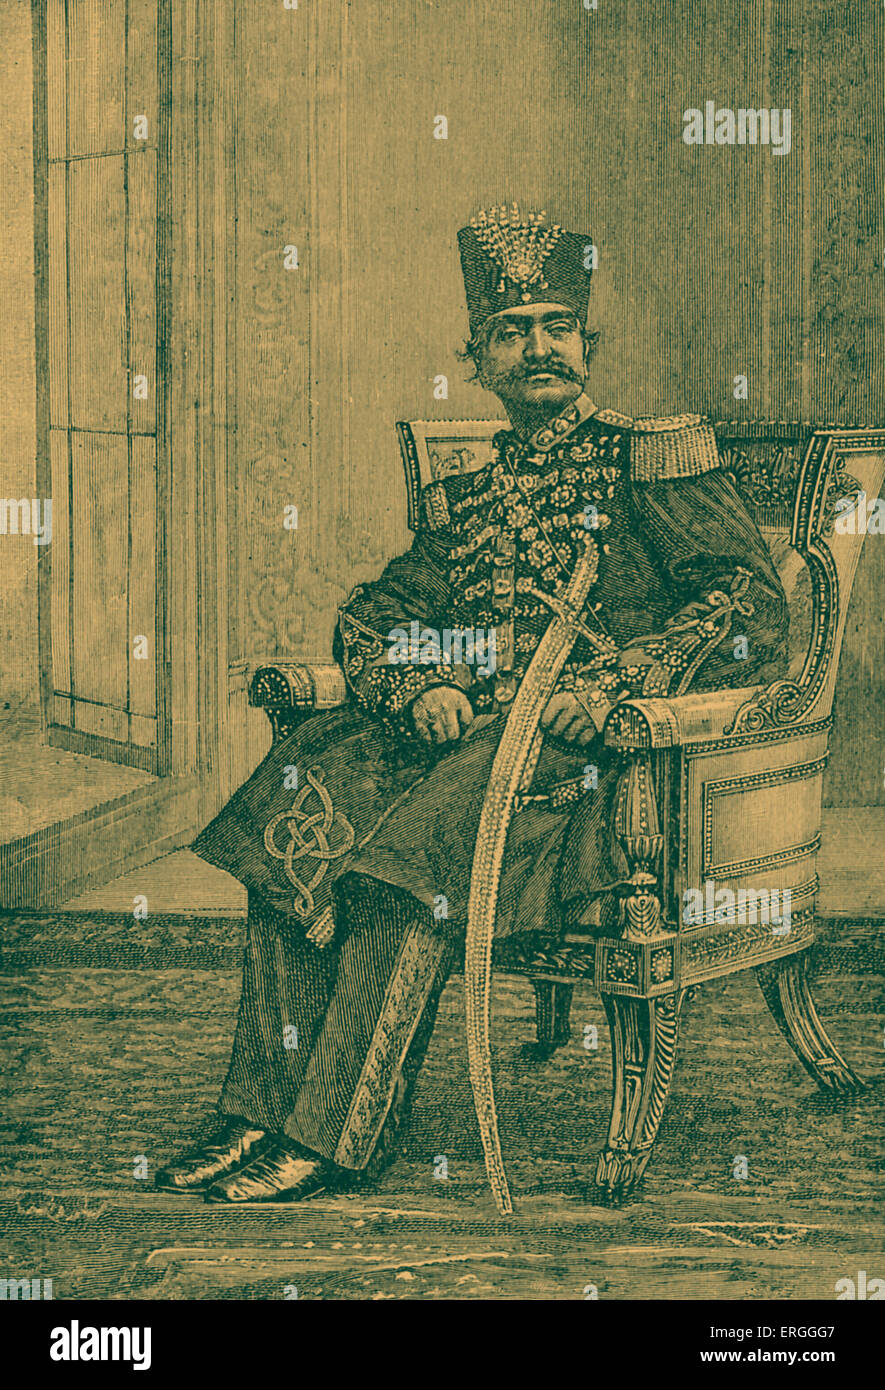 Naser al-Din Shah Qajar - portrait. Le roi d'Iran du 17 septembre 1848 - 1 mai 1896 lorsqu'il a été assassiné. 16 juillet 1831 - 1 mai 1896. Banque D'Images